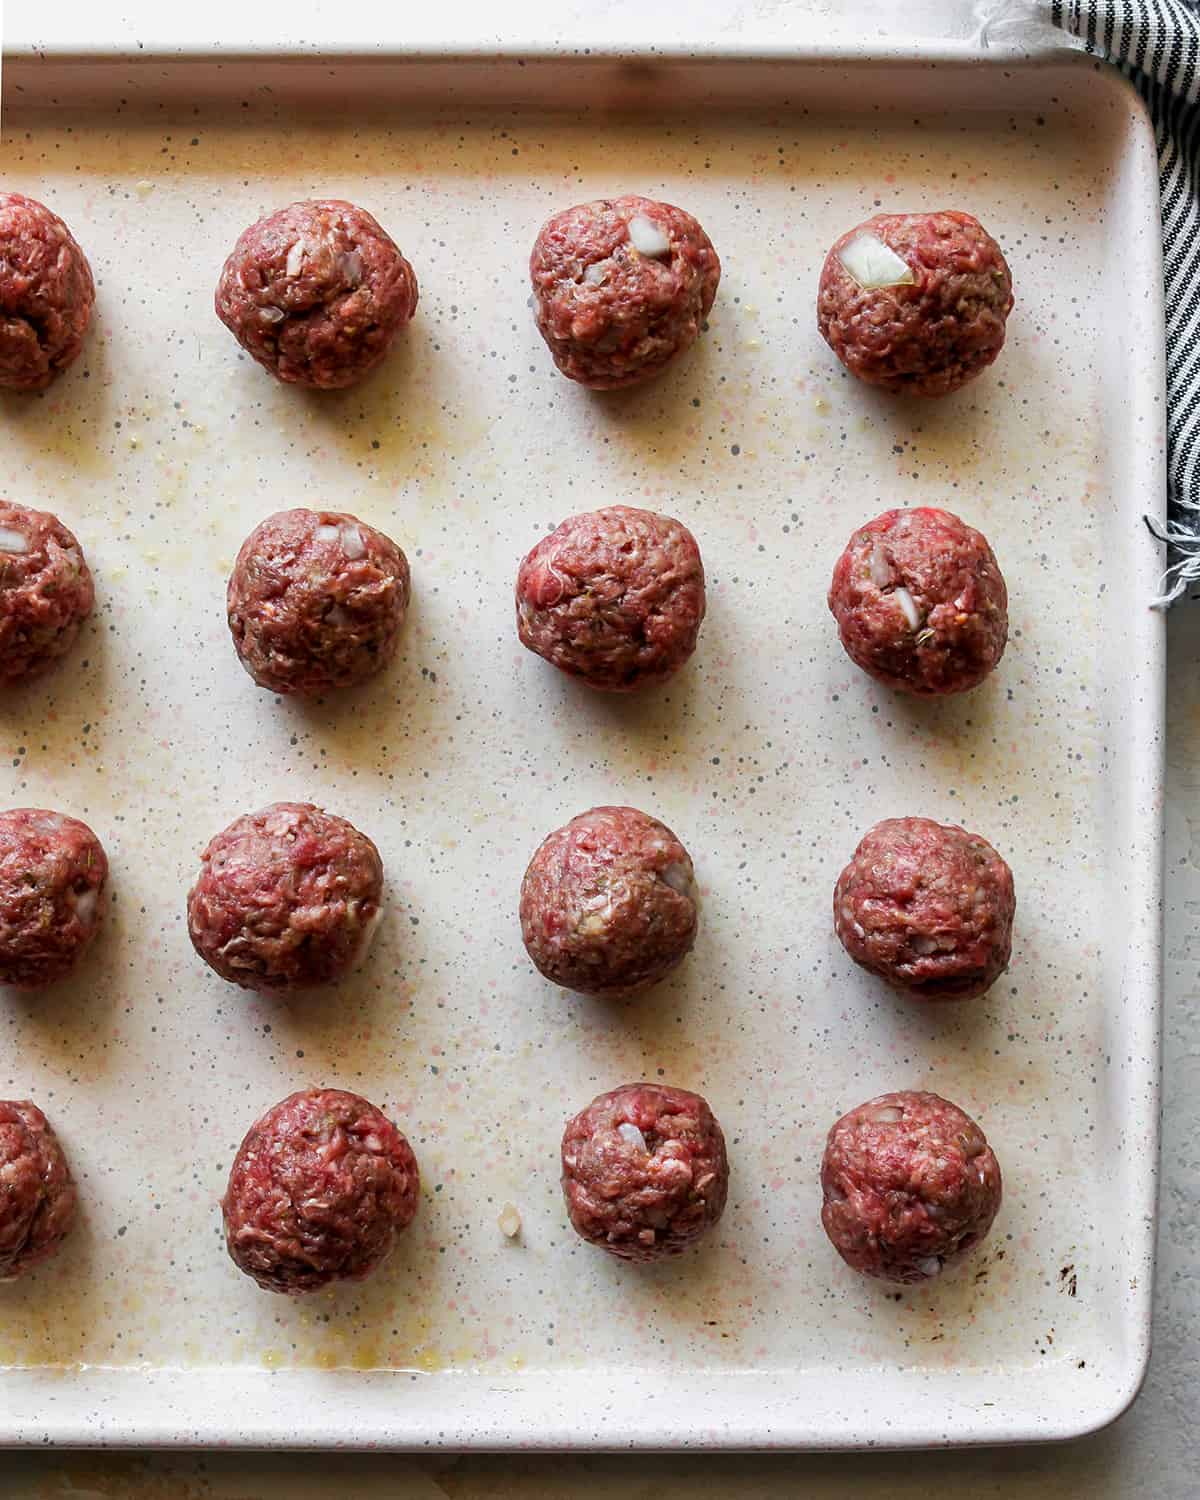 Greek Meatballs on a baking sheet before baking